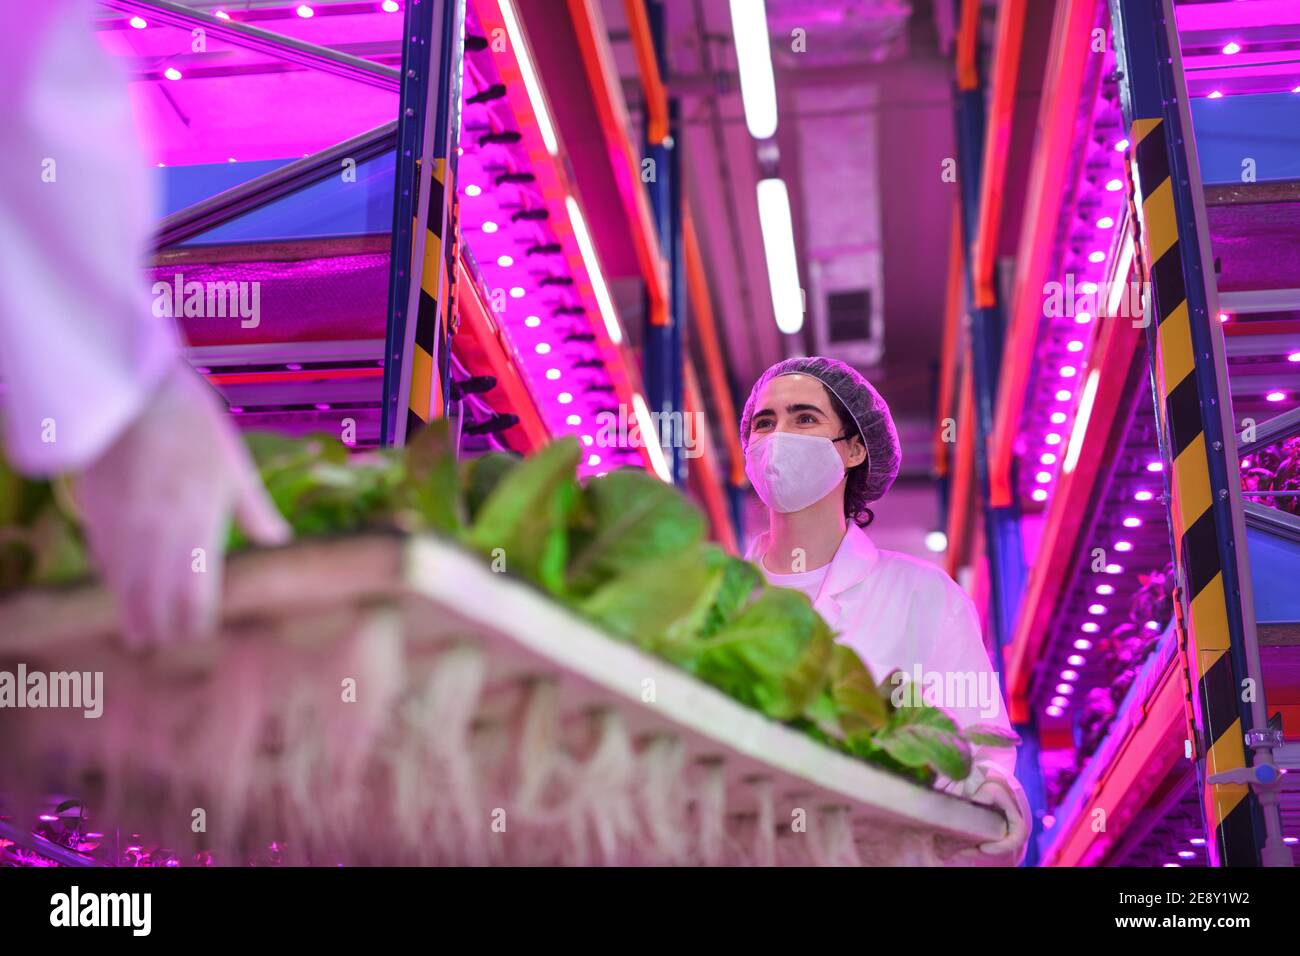 Trabajadores con máscara facial en granja aquapónica, negocios sostenibles y coronavirus. Foto de stock